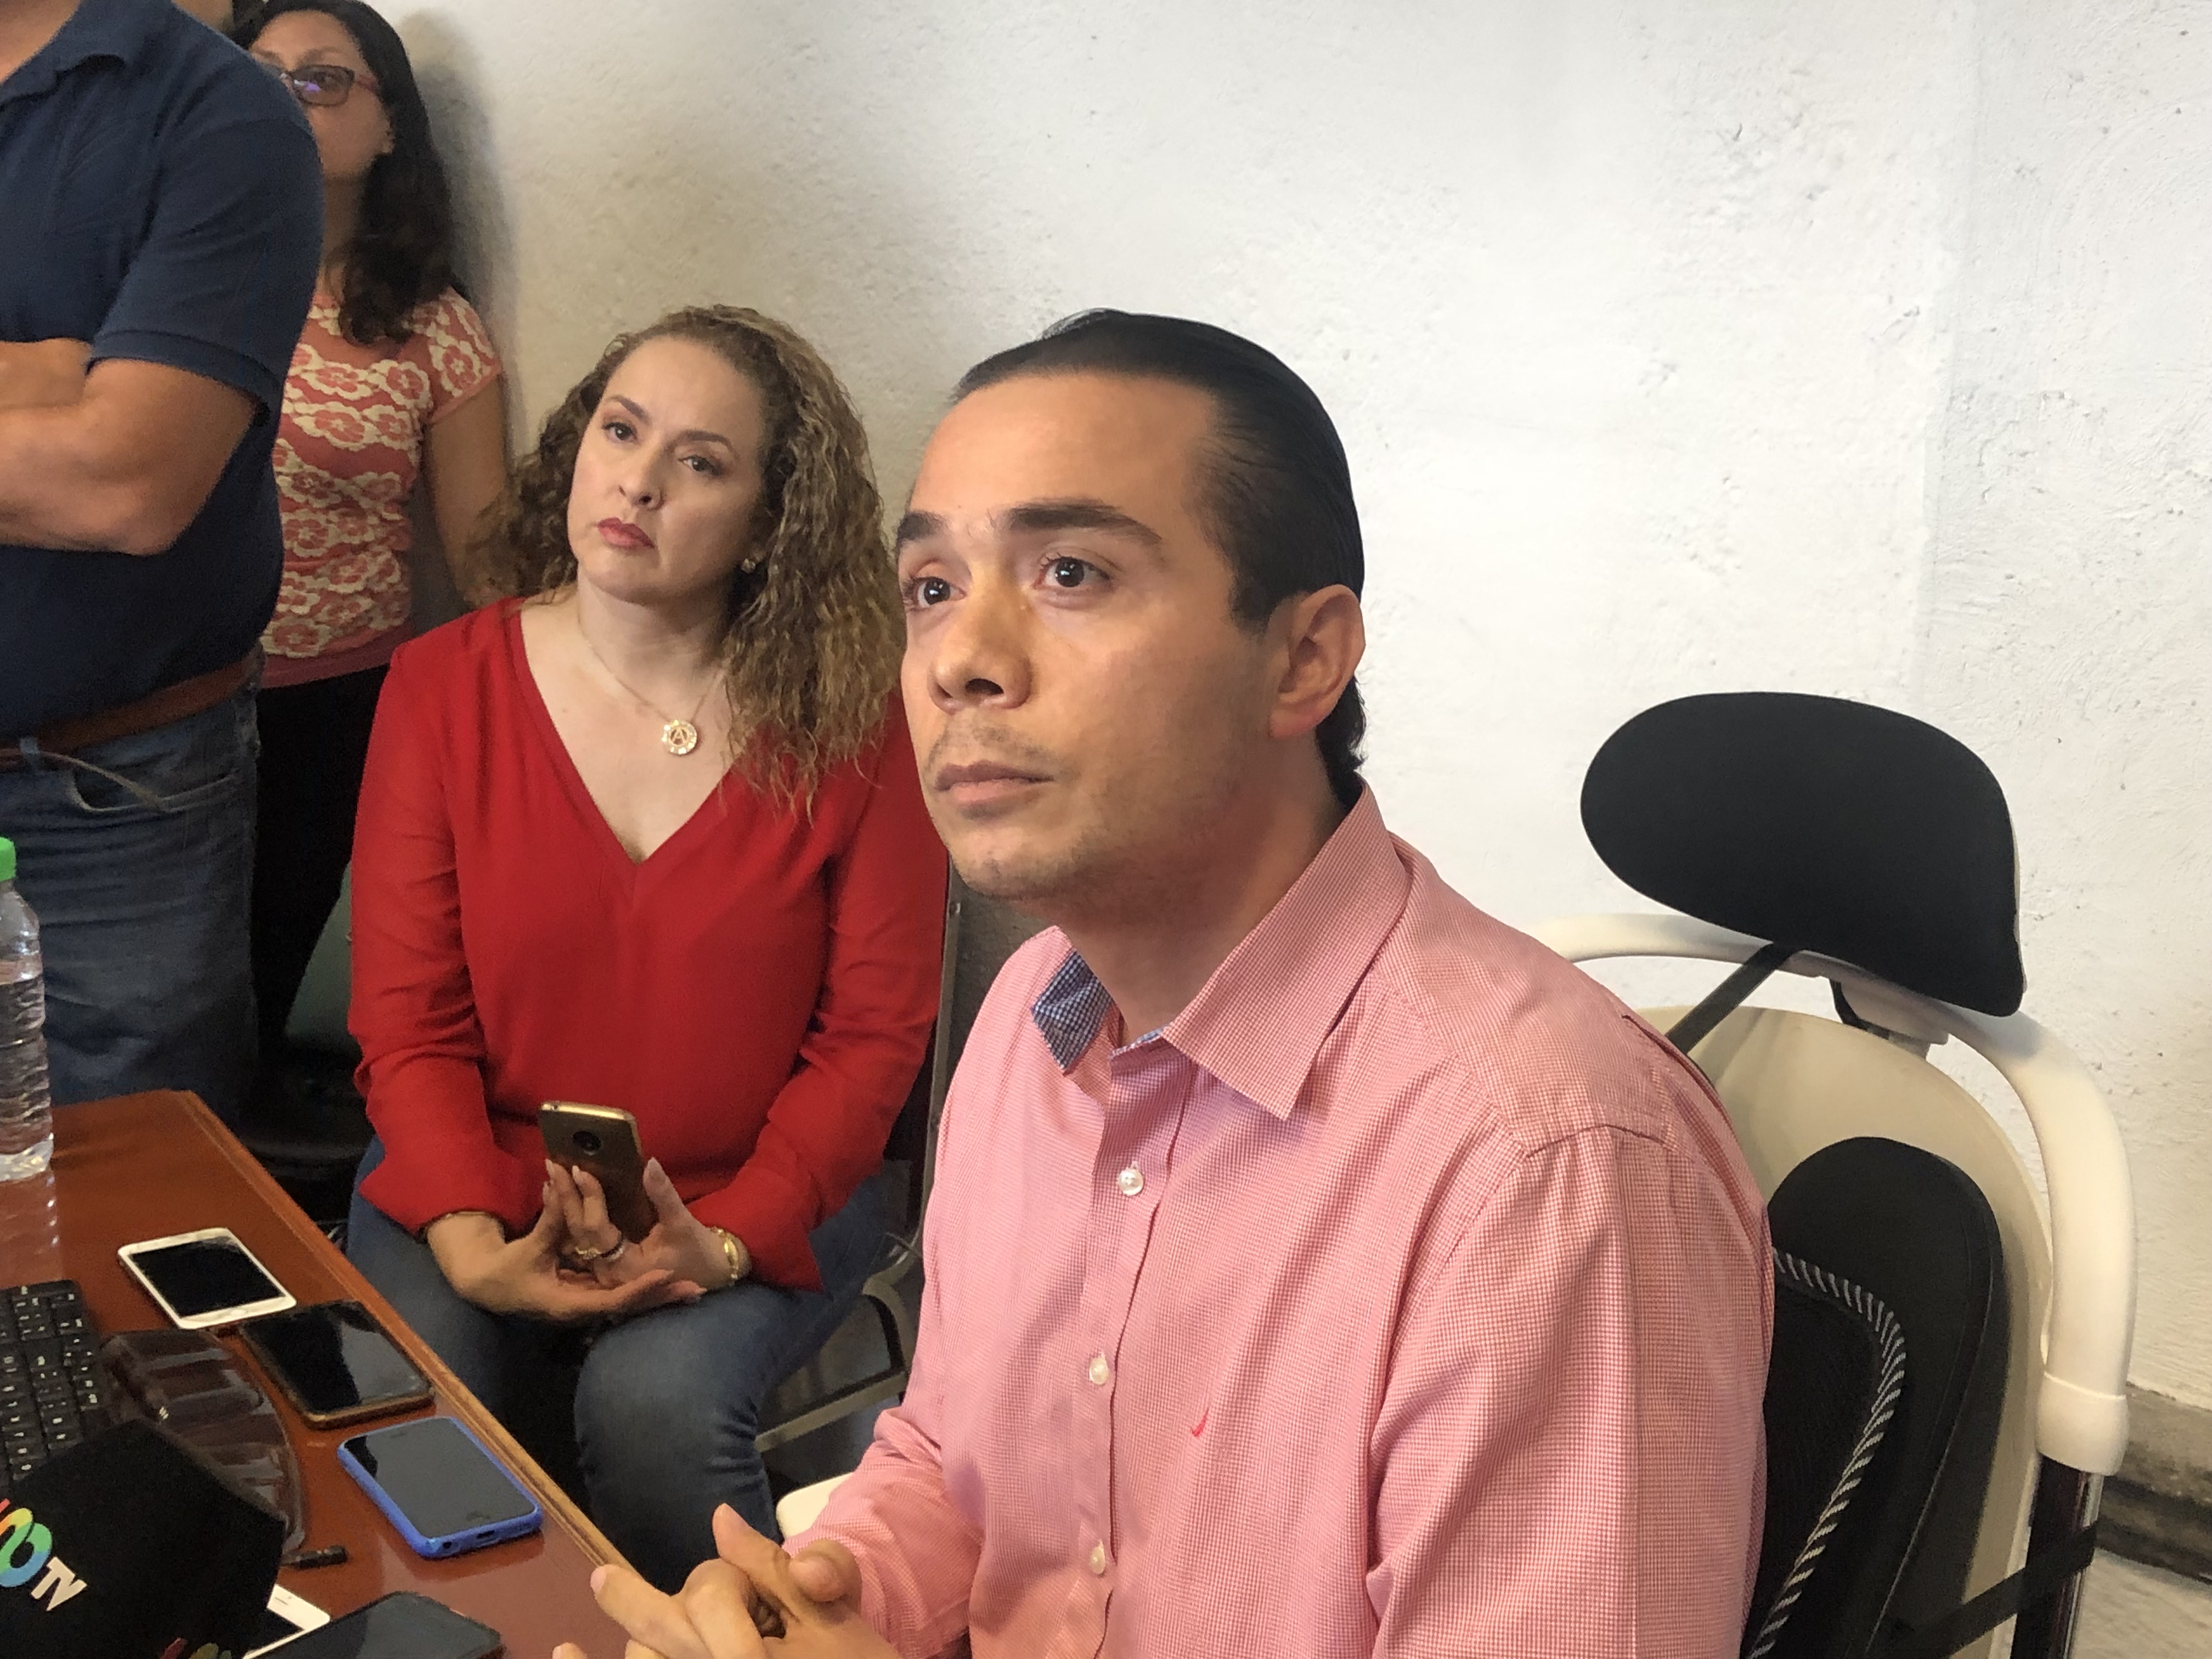  Elevadores tenían varios días sin funcionar, reconoce delegado del ISSSTE en Querétaro